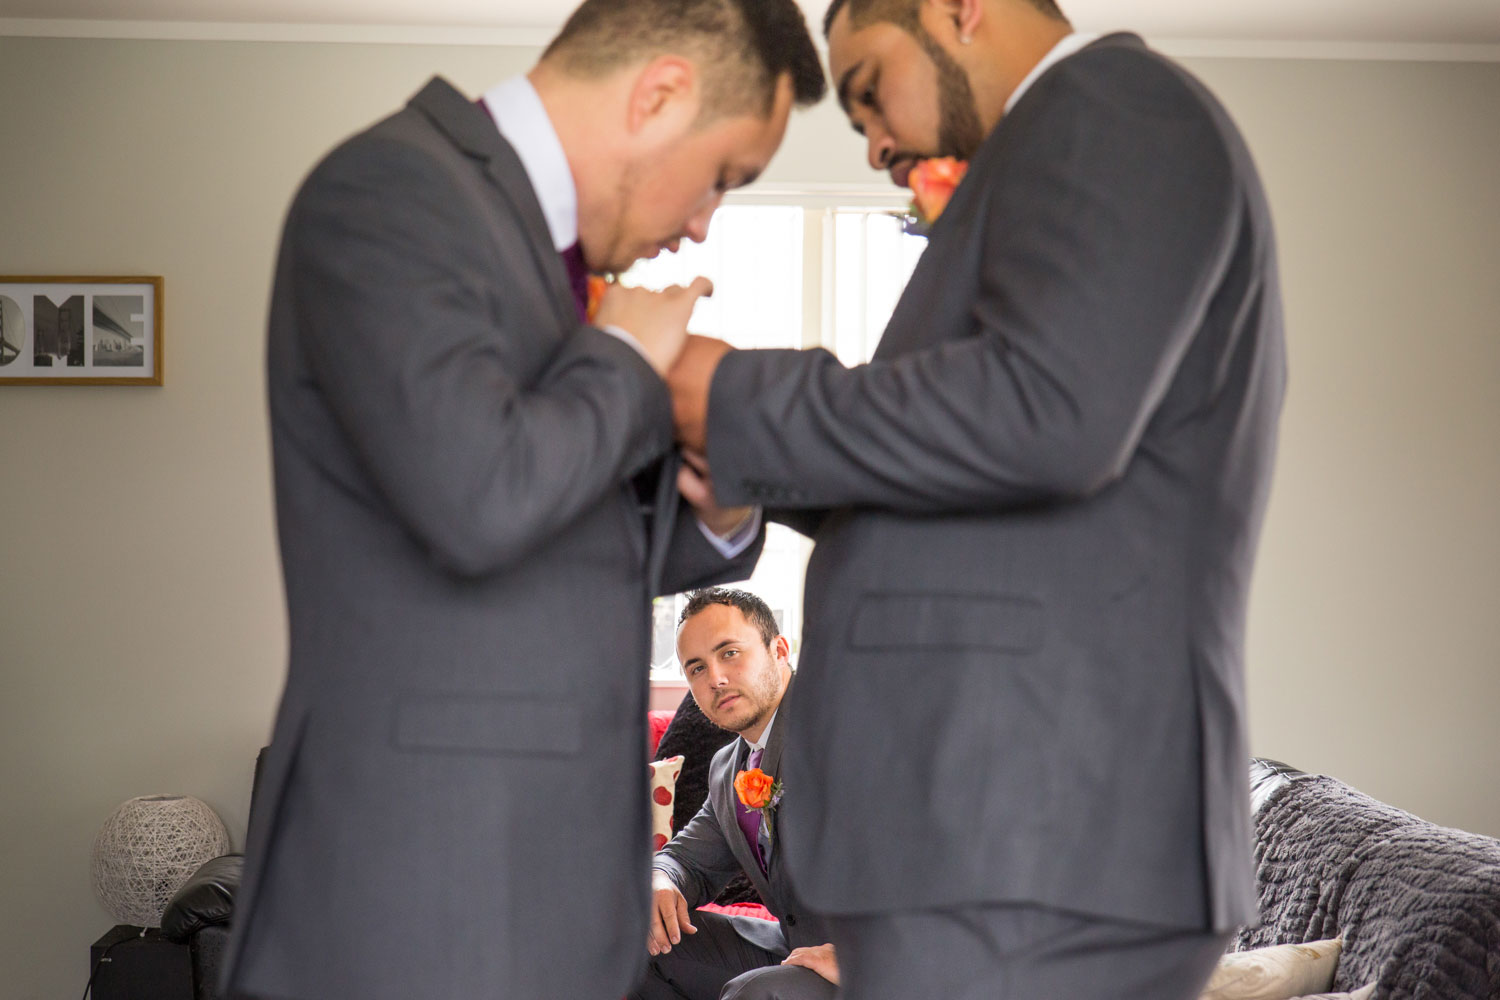 auckland maraetai wedding boys getting ready